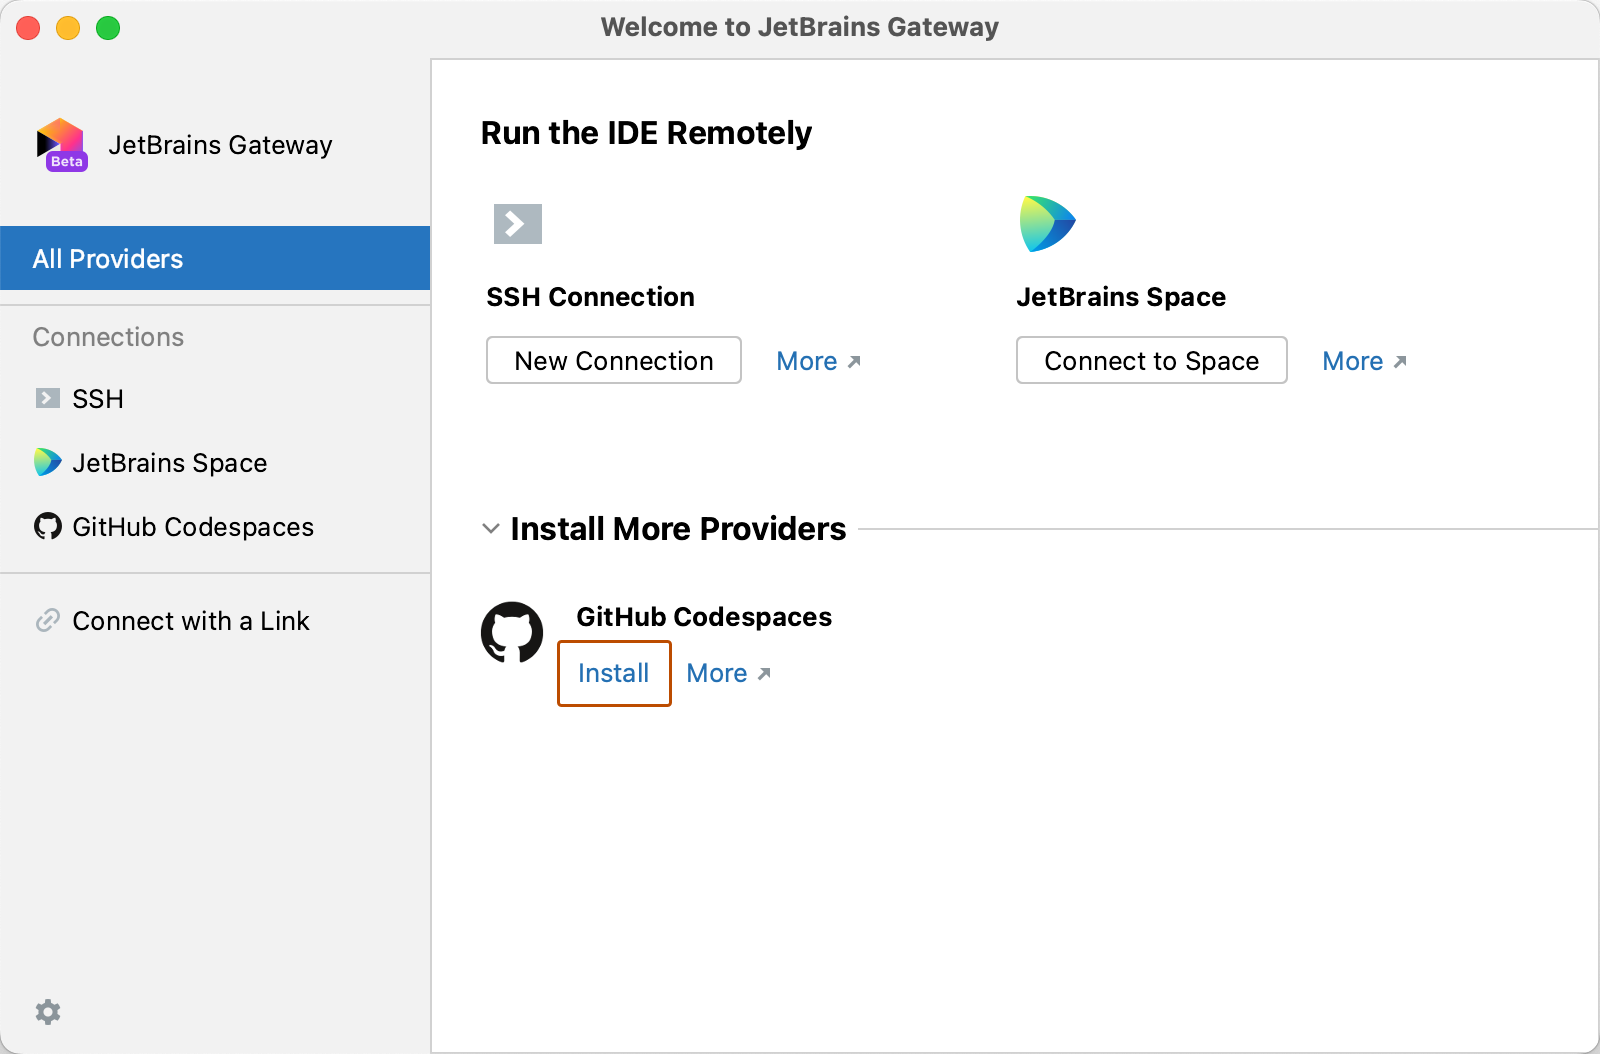 Снимок экрана: страница "Добро пожаловать в шлюз JetBrains" со списком "GitHub Codespaces" в разделе "Установка дополнительных поставщиков".